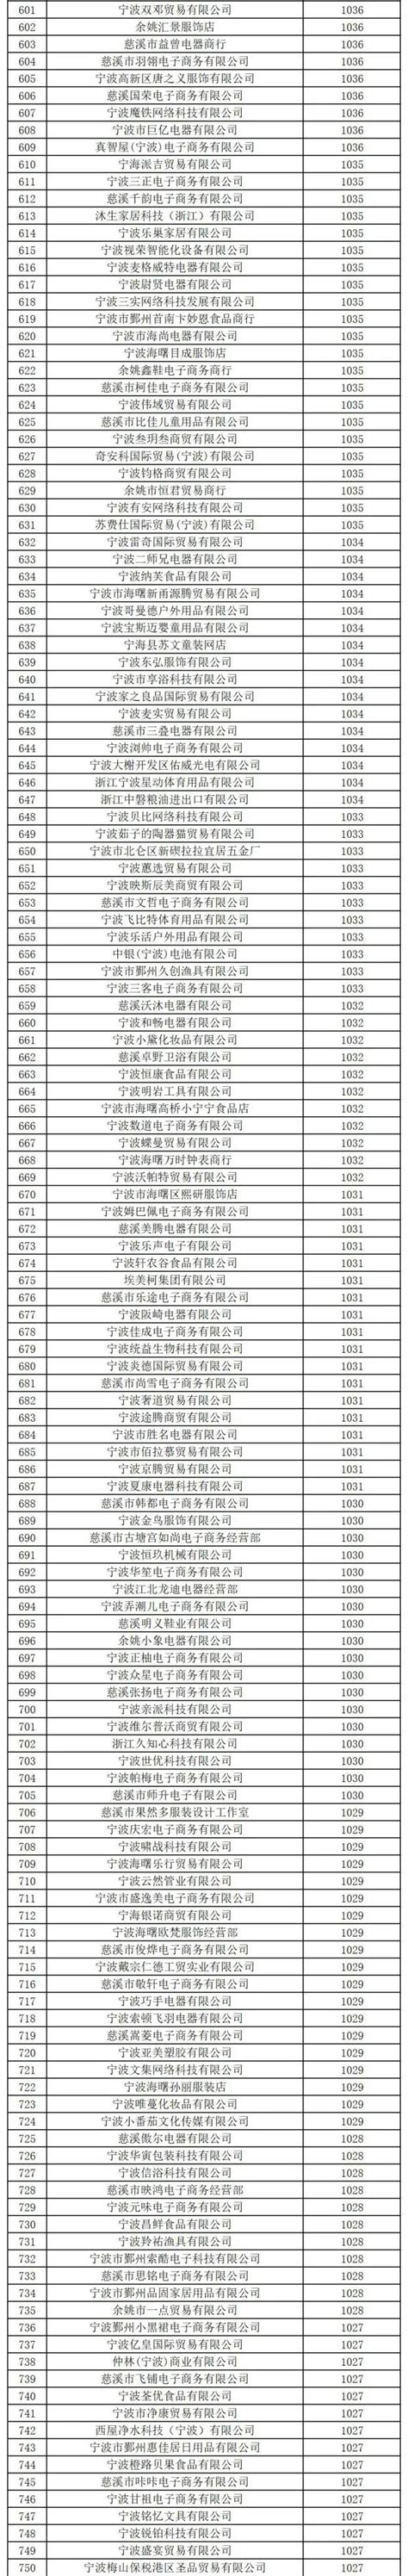 杭州、宁波、温州、绍兴、金华、湖州、舟山等浙江省11市GDP分享__财经头条